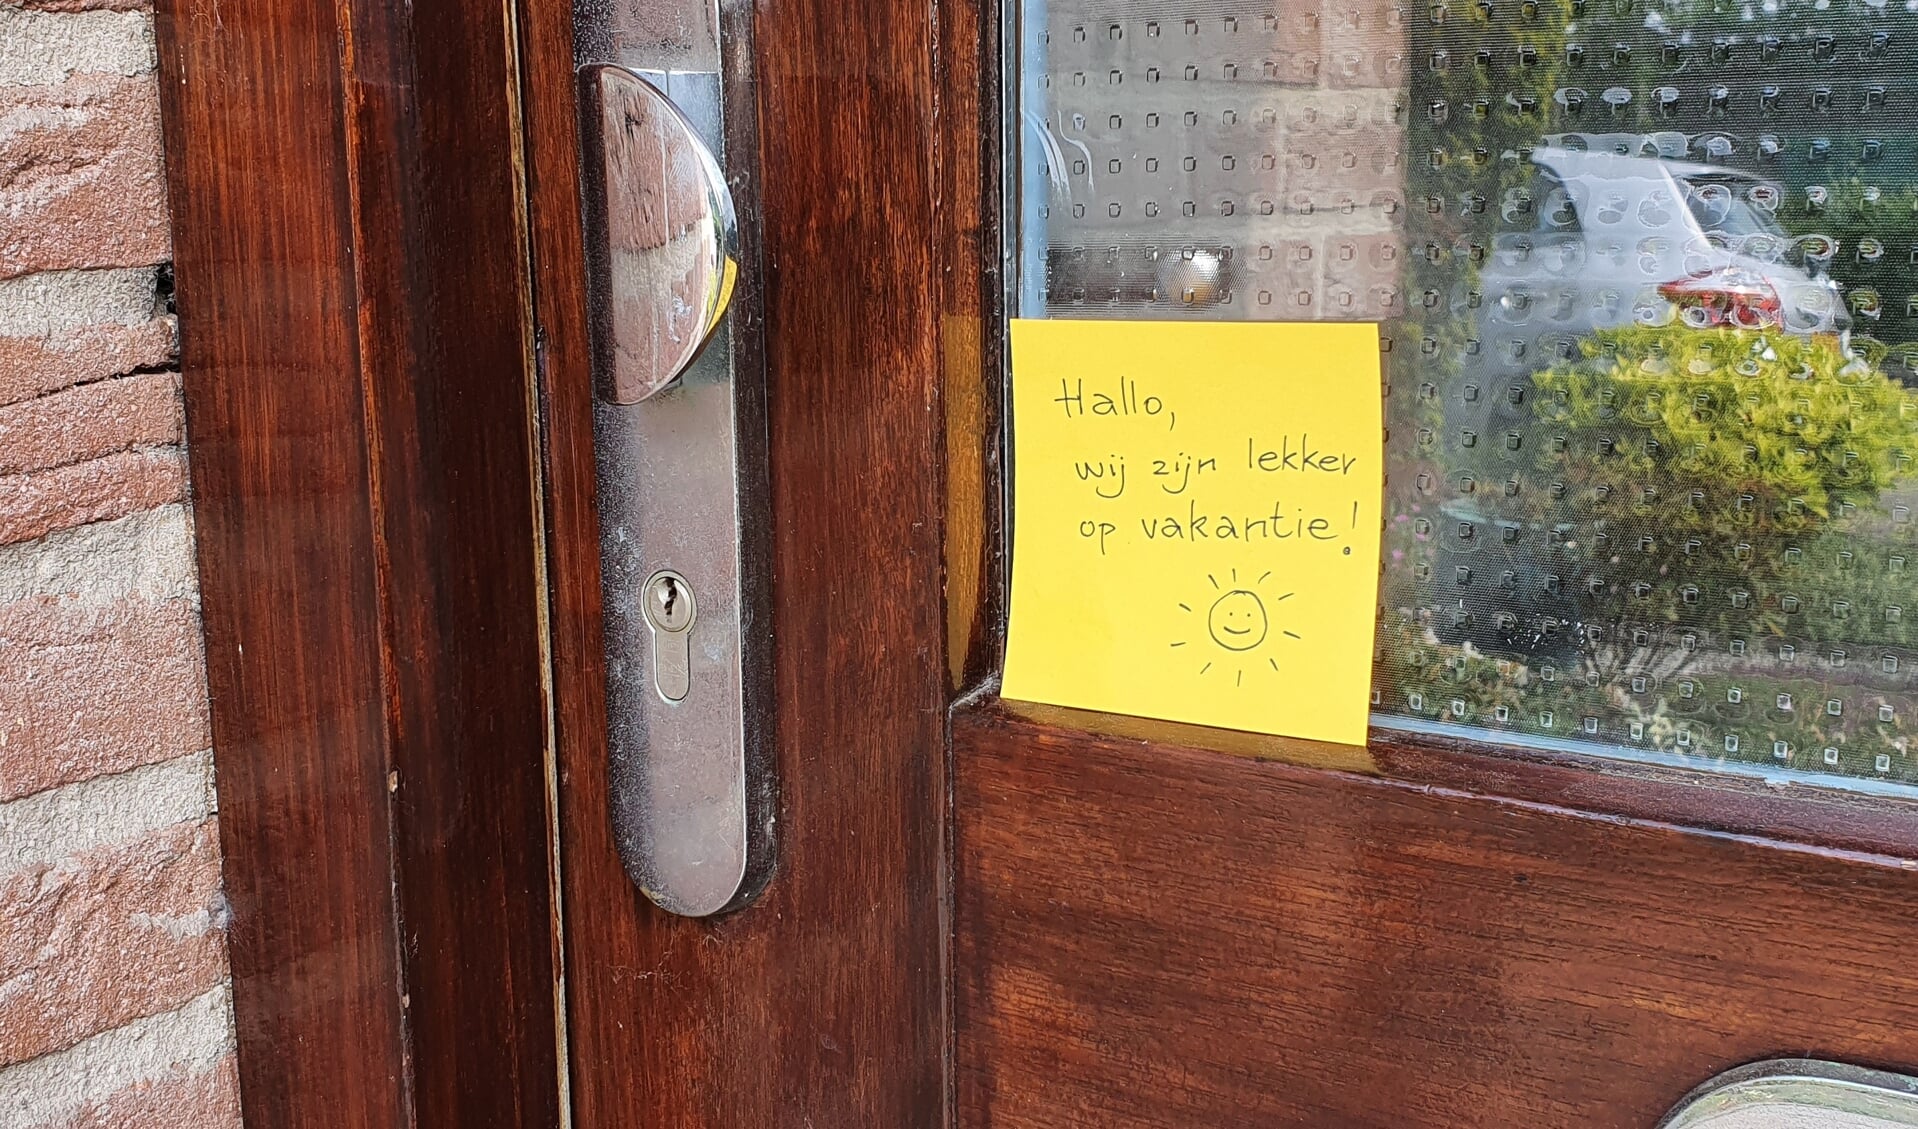 Briefje op voordeur 'Hallo, wij zijn lekker op vakantie!'